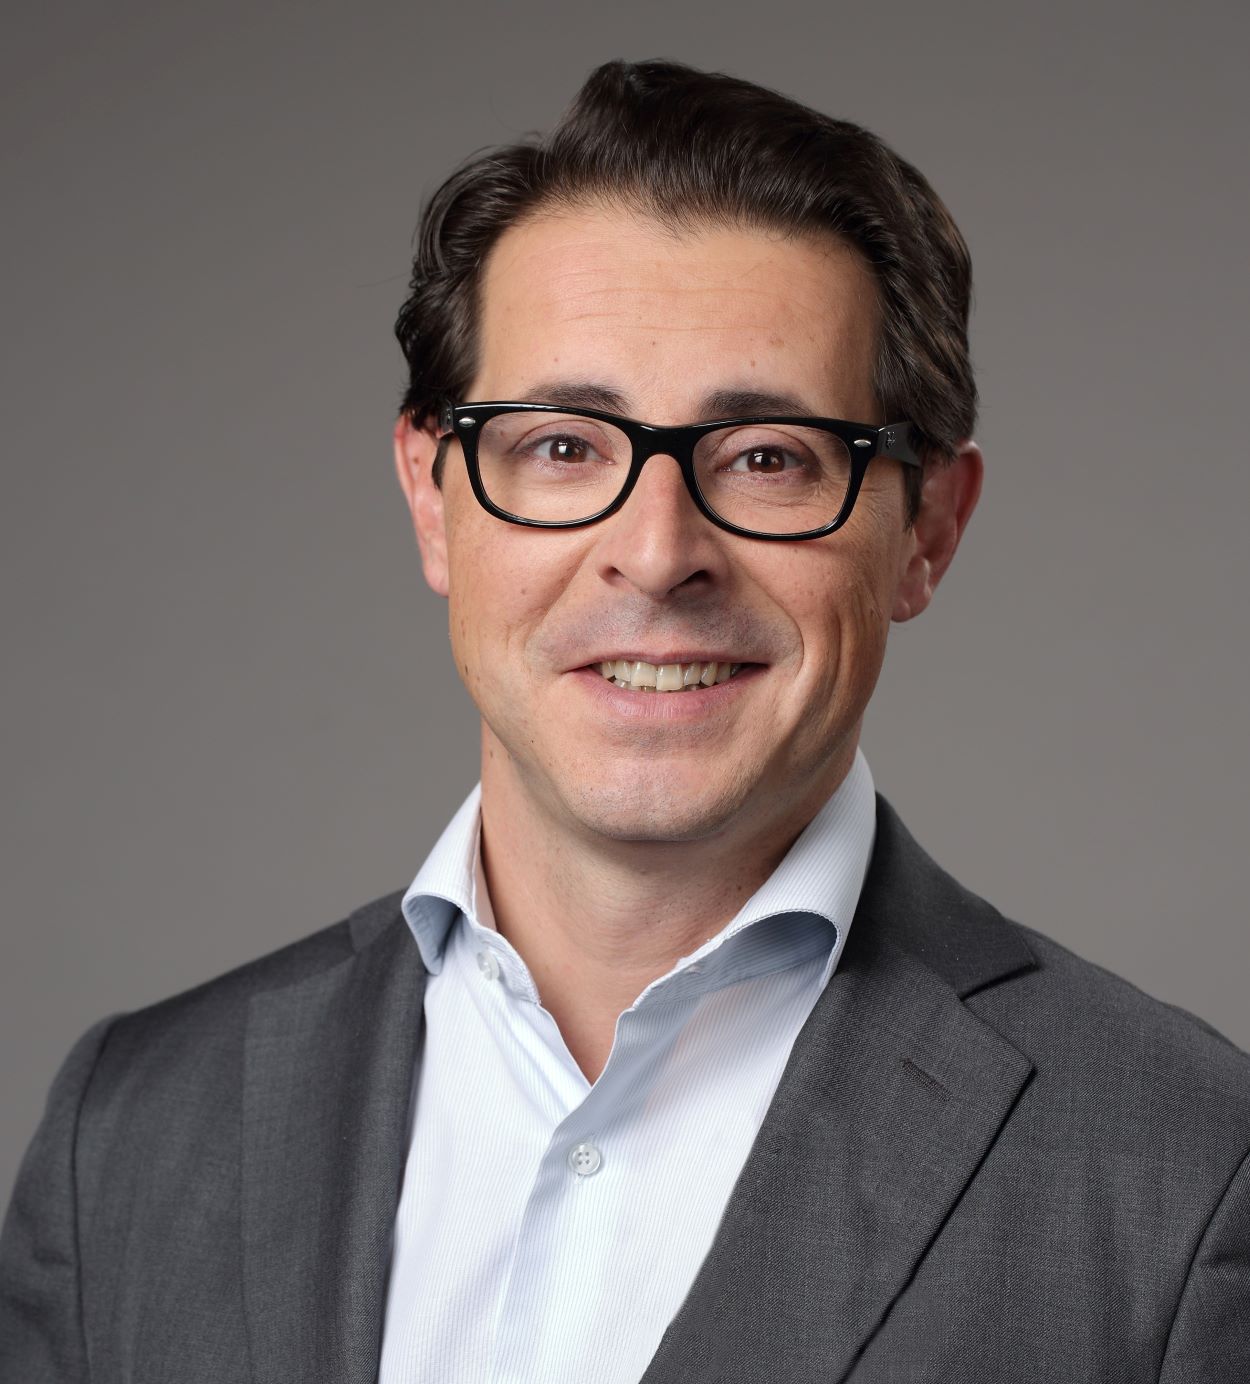 Interview de Fausto Rotelli – Directeur des relations extérieures – Ferrero – Co-président du GT emballages de l’ANIA